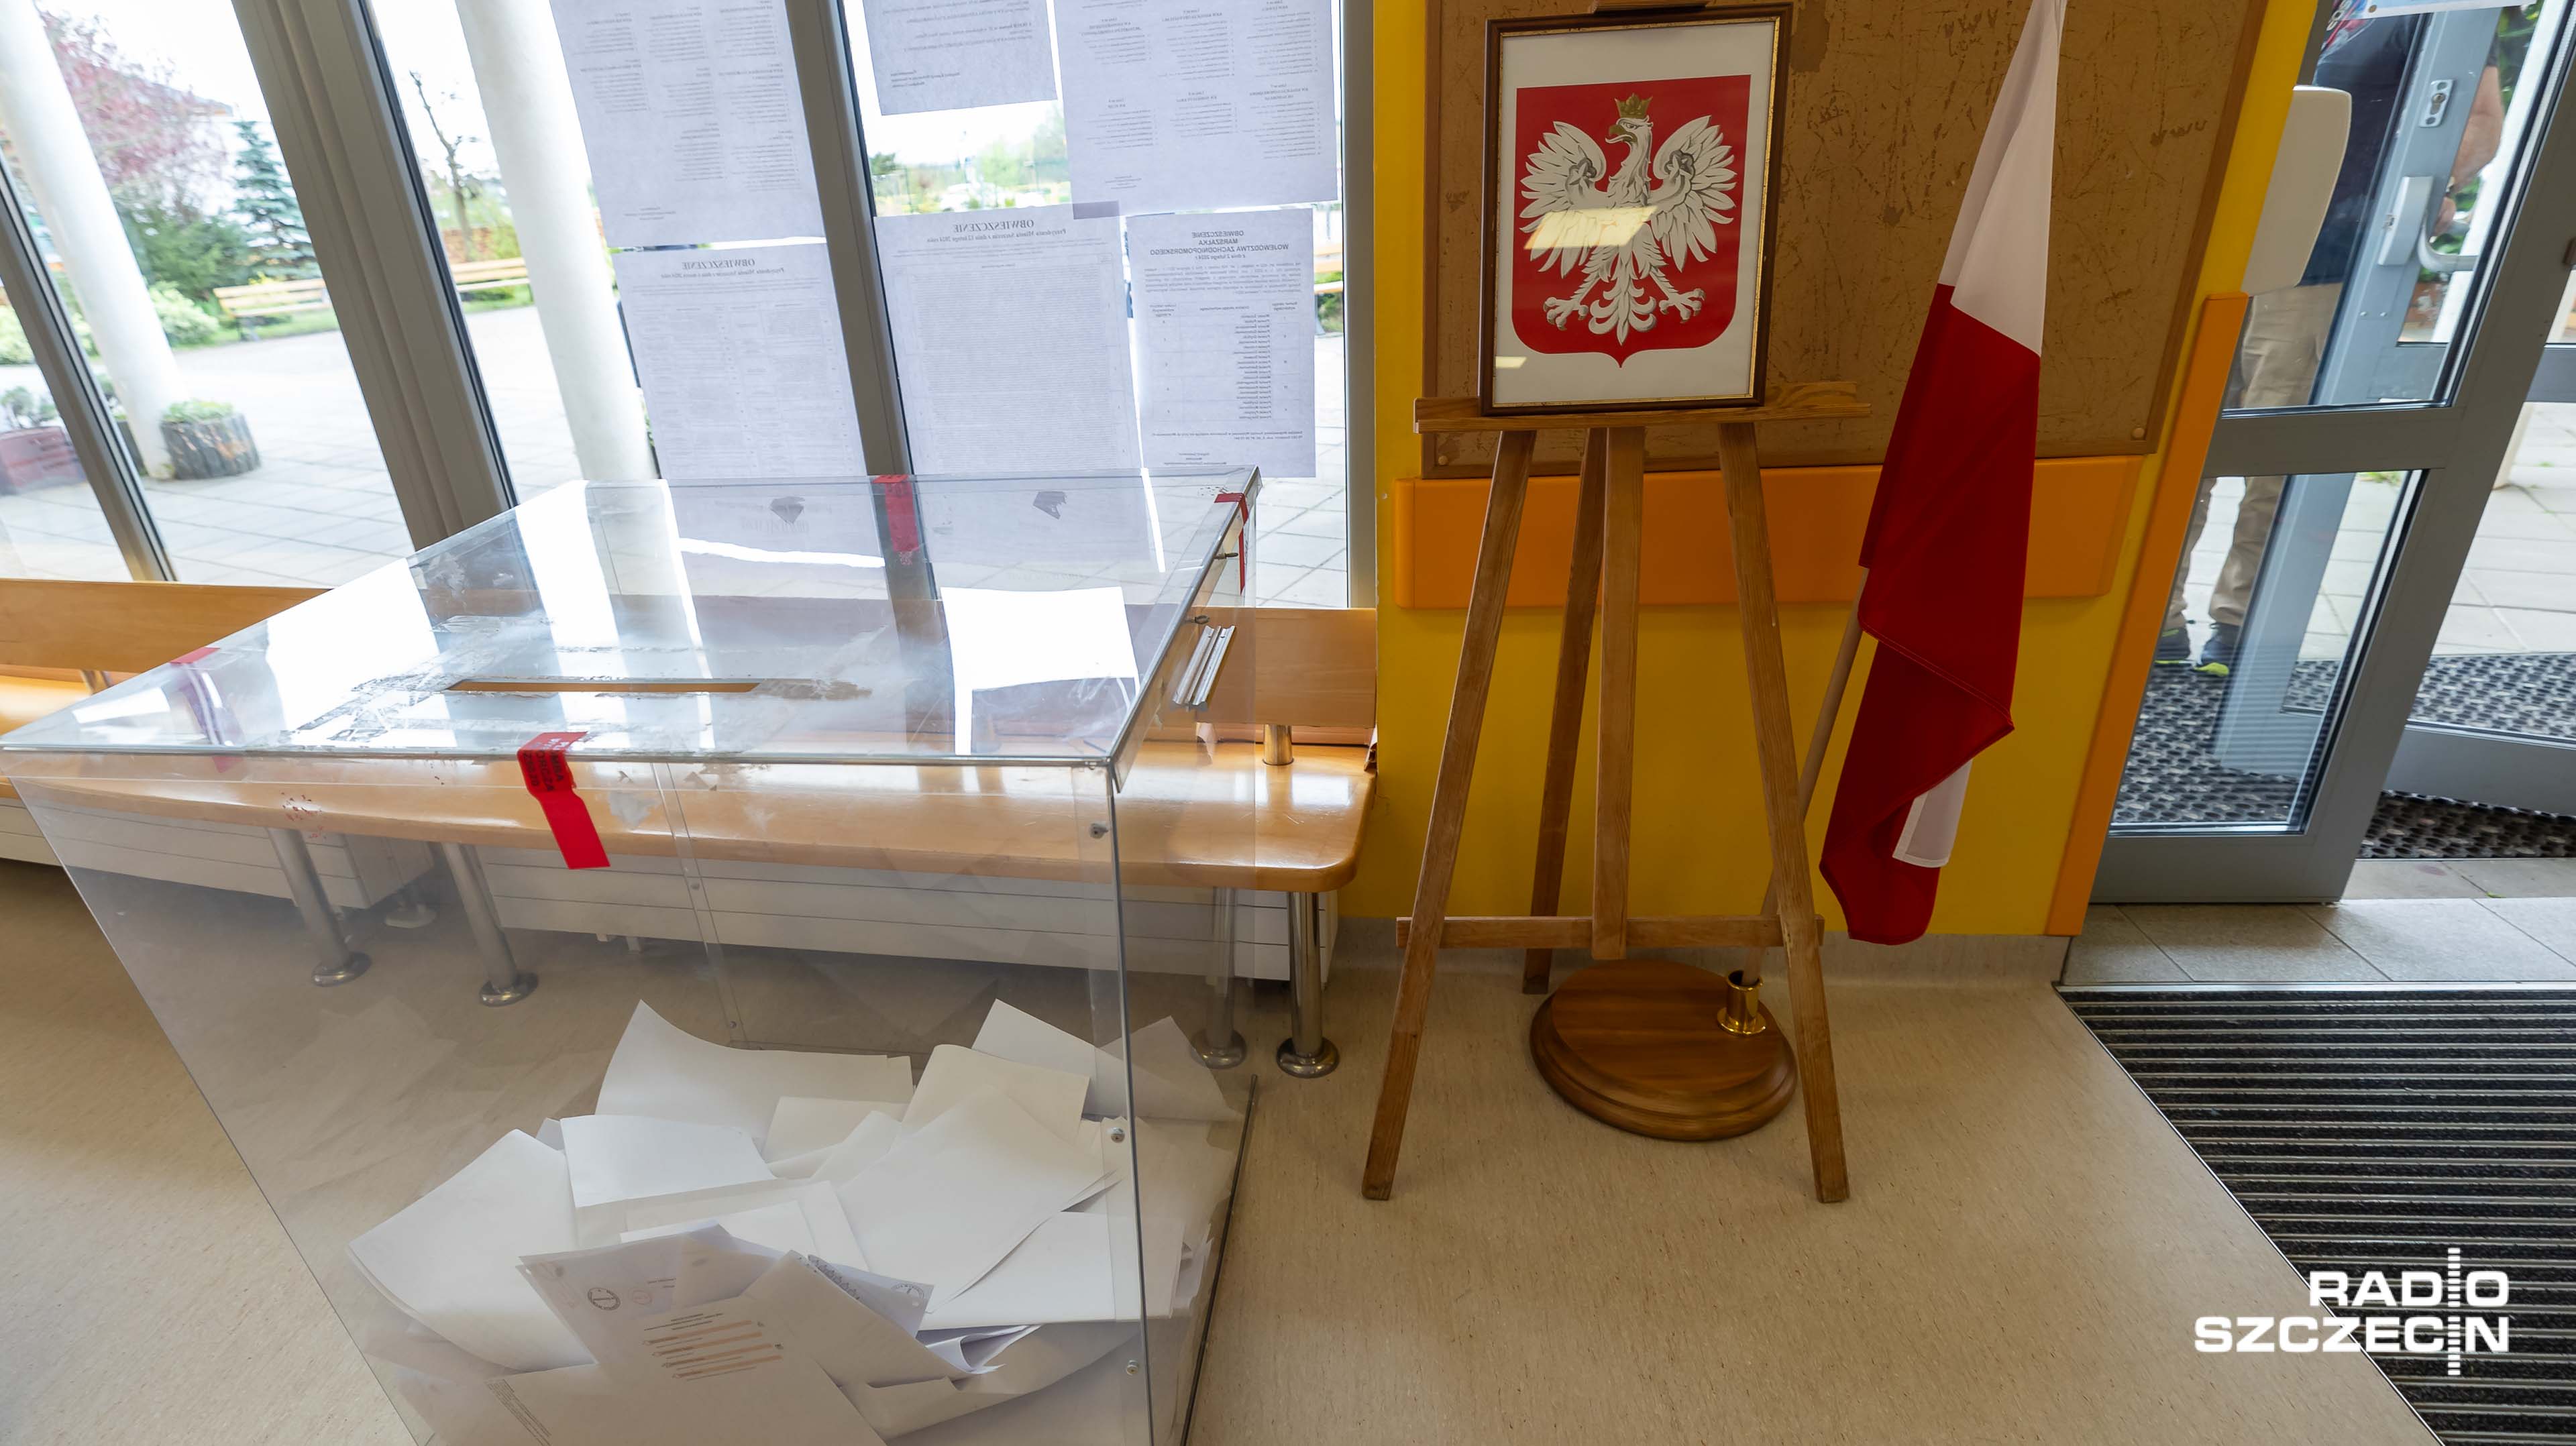 Frekwencja w wyborach parlamentarnych w Polsce, która wyniosła ponad 74 procent, wzbudziła podziw w Europie. W niedzielę okaże się, czy w wyborach do Parlamentu Europejskiego Polacy tak samo licznie pójdą do urn.